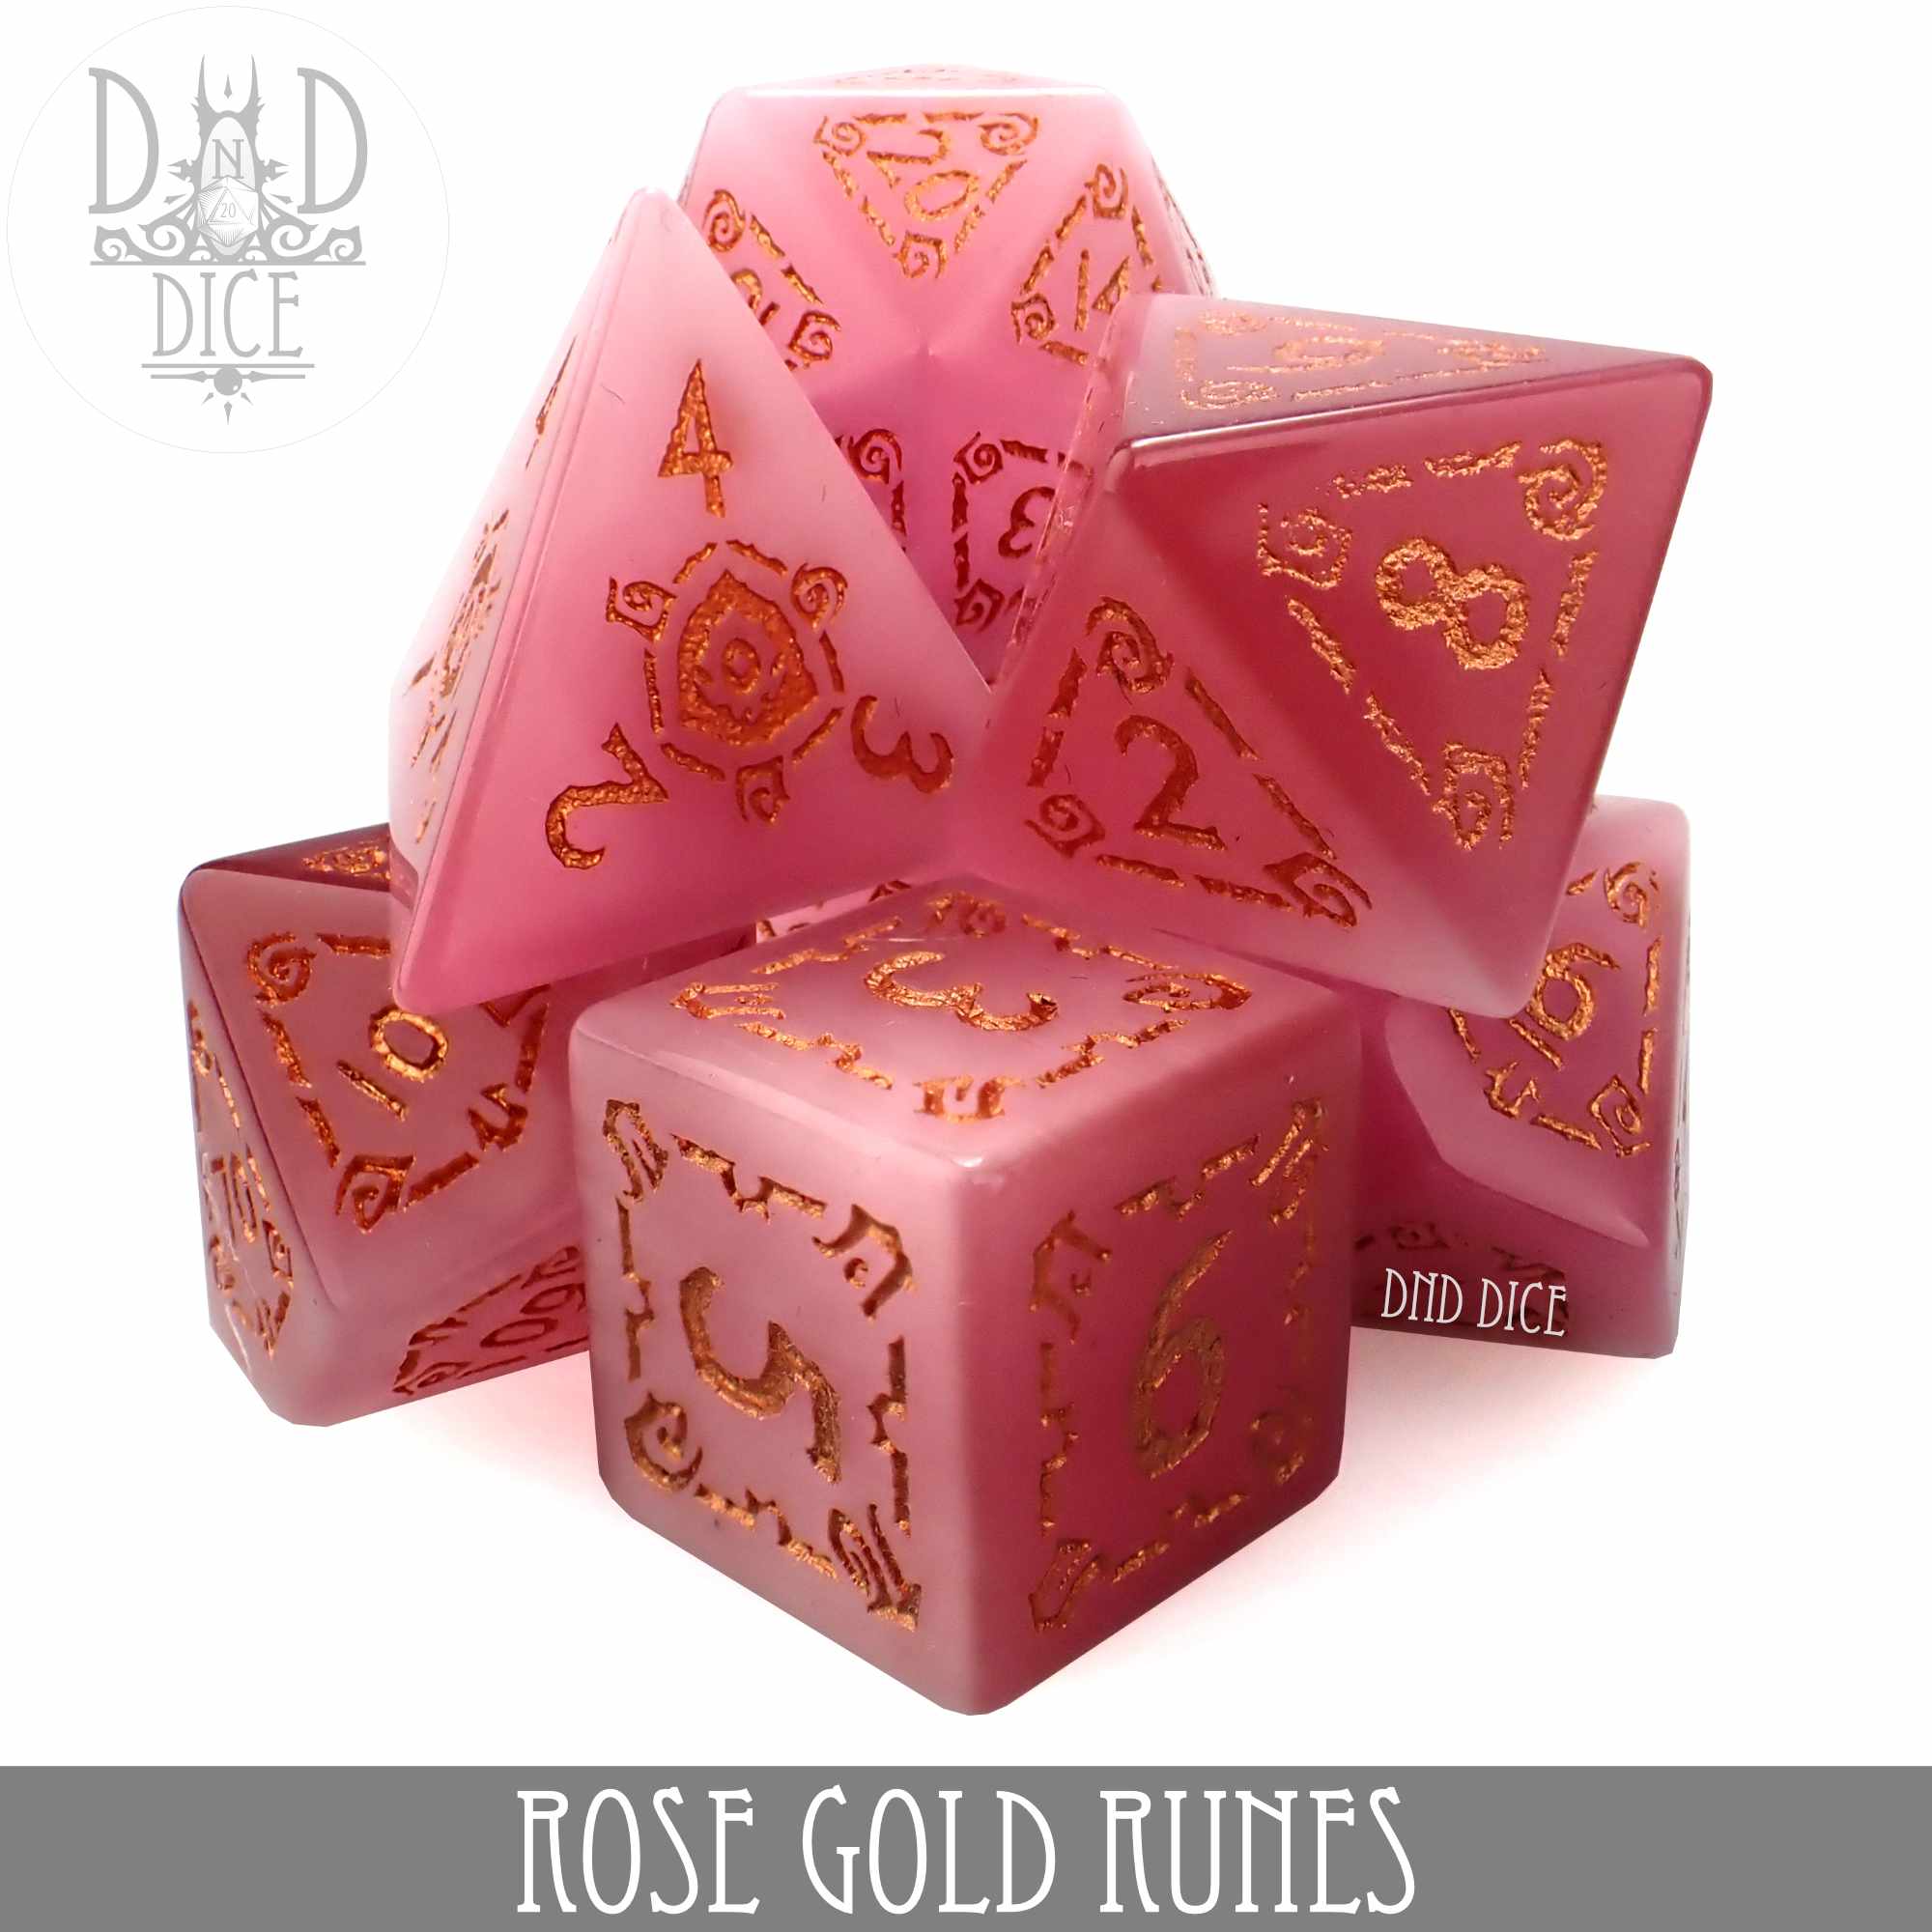 Rose Gold Runes (Gift Box)